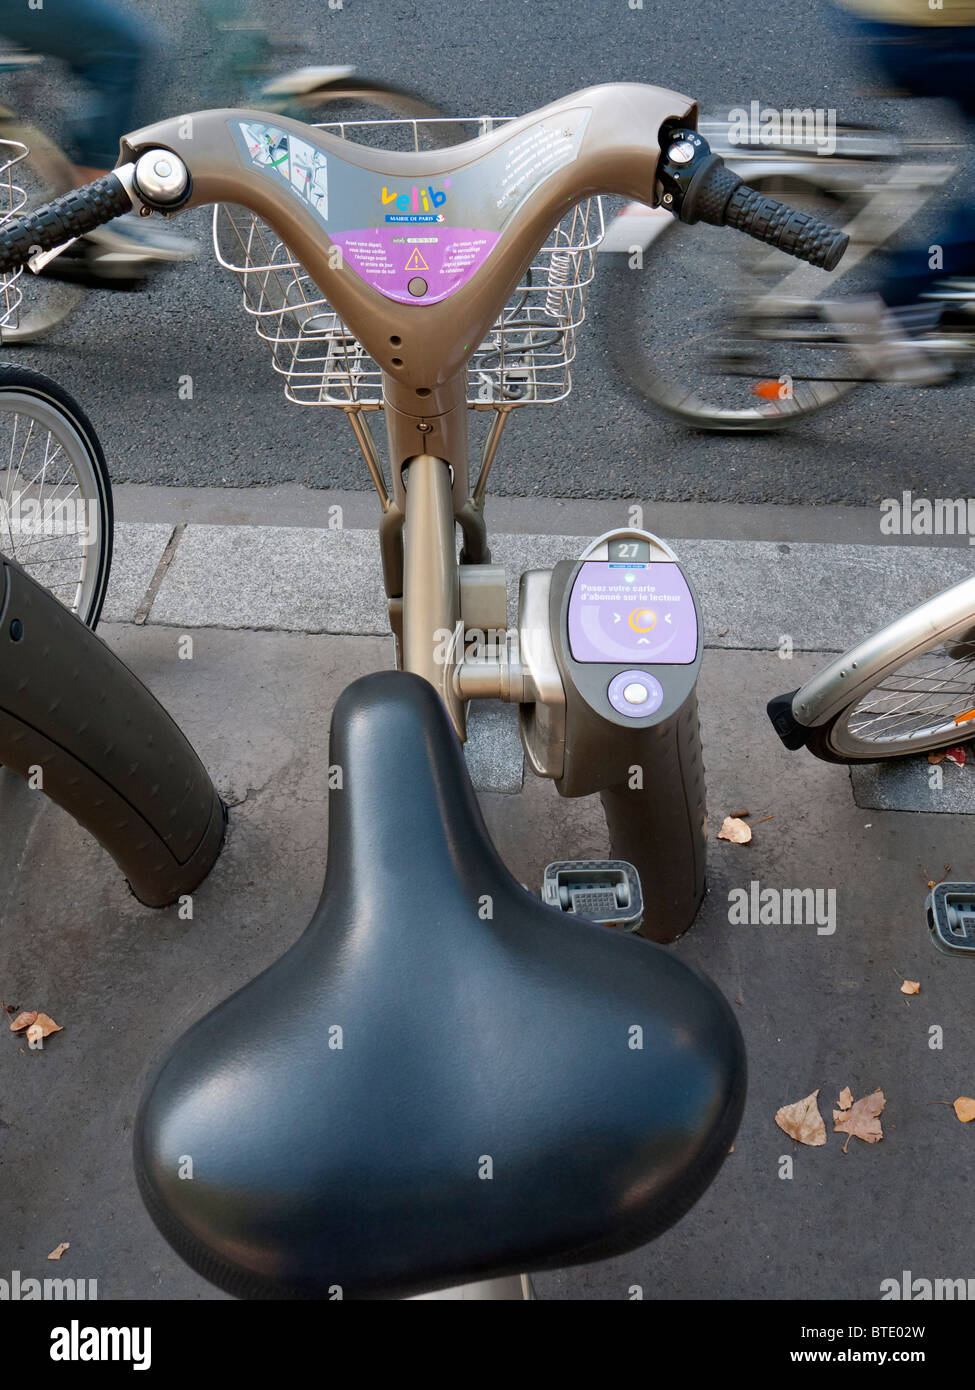 Service de location de vélos appelé public Velibon rue de Paris en France Banque D'Images